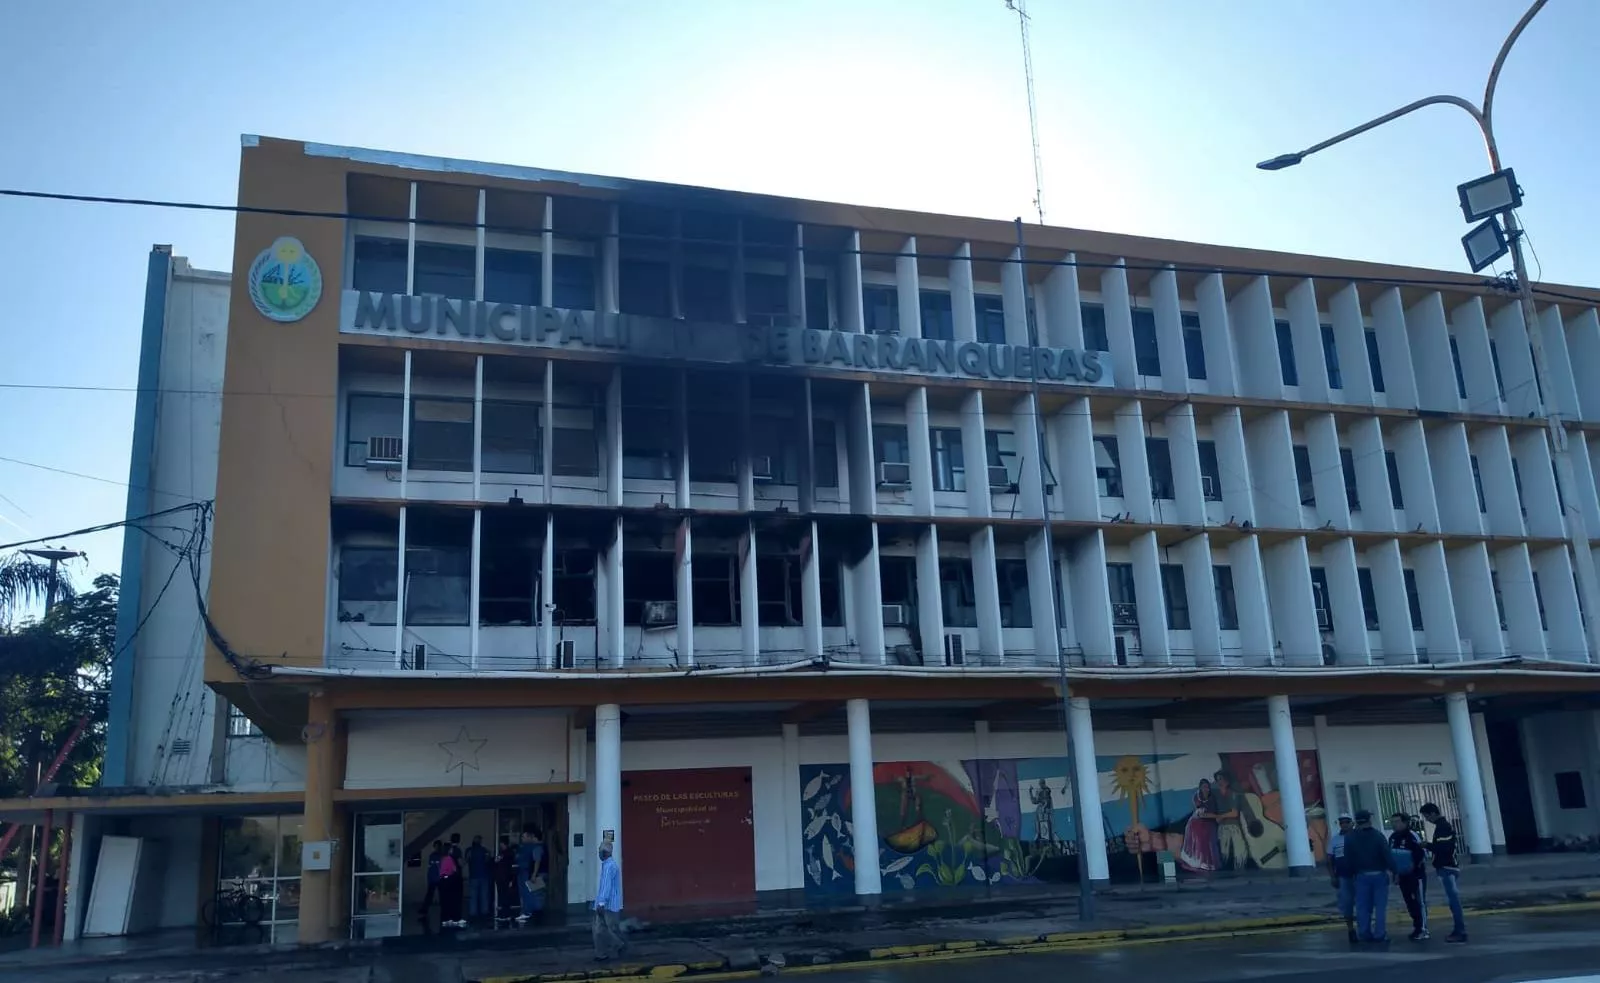 Se incendió el edificio de la Municipalidad de Barranqueras y el edificio podría derrumbarse